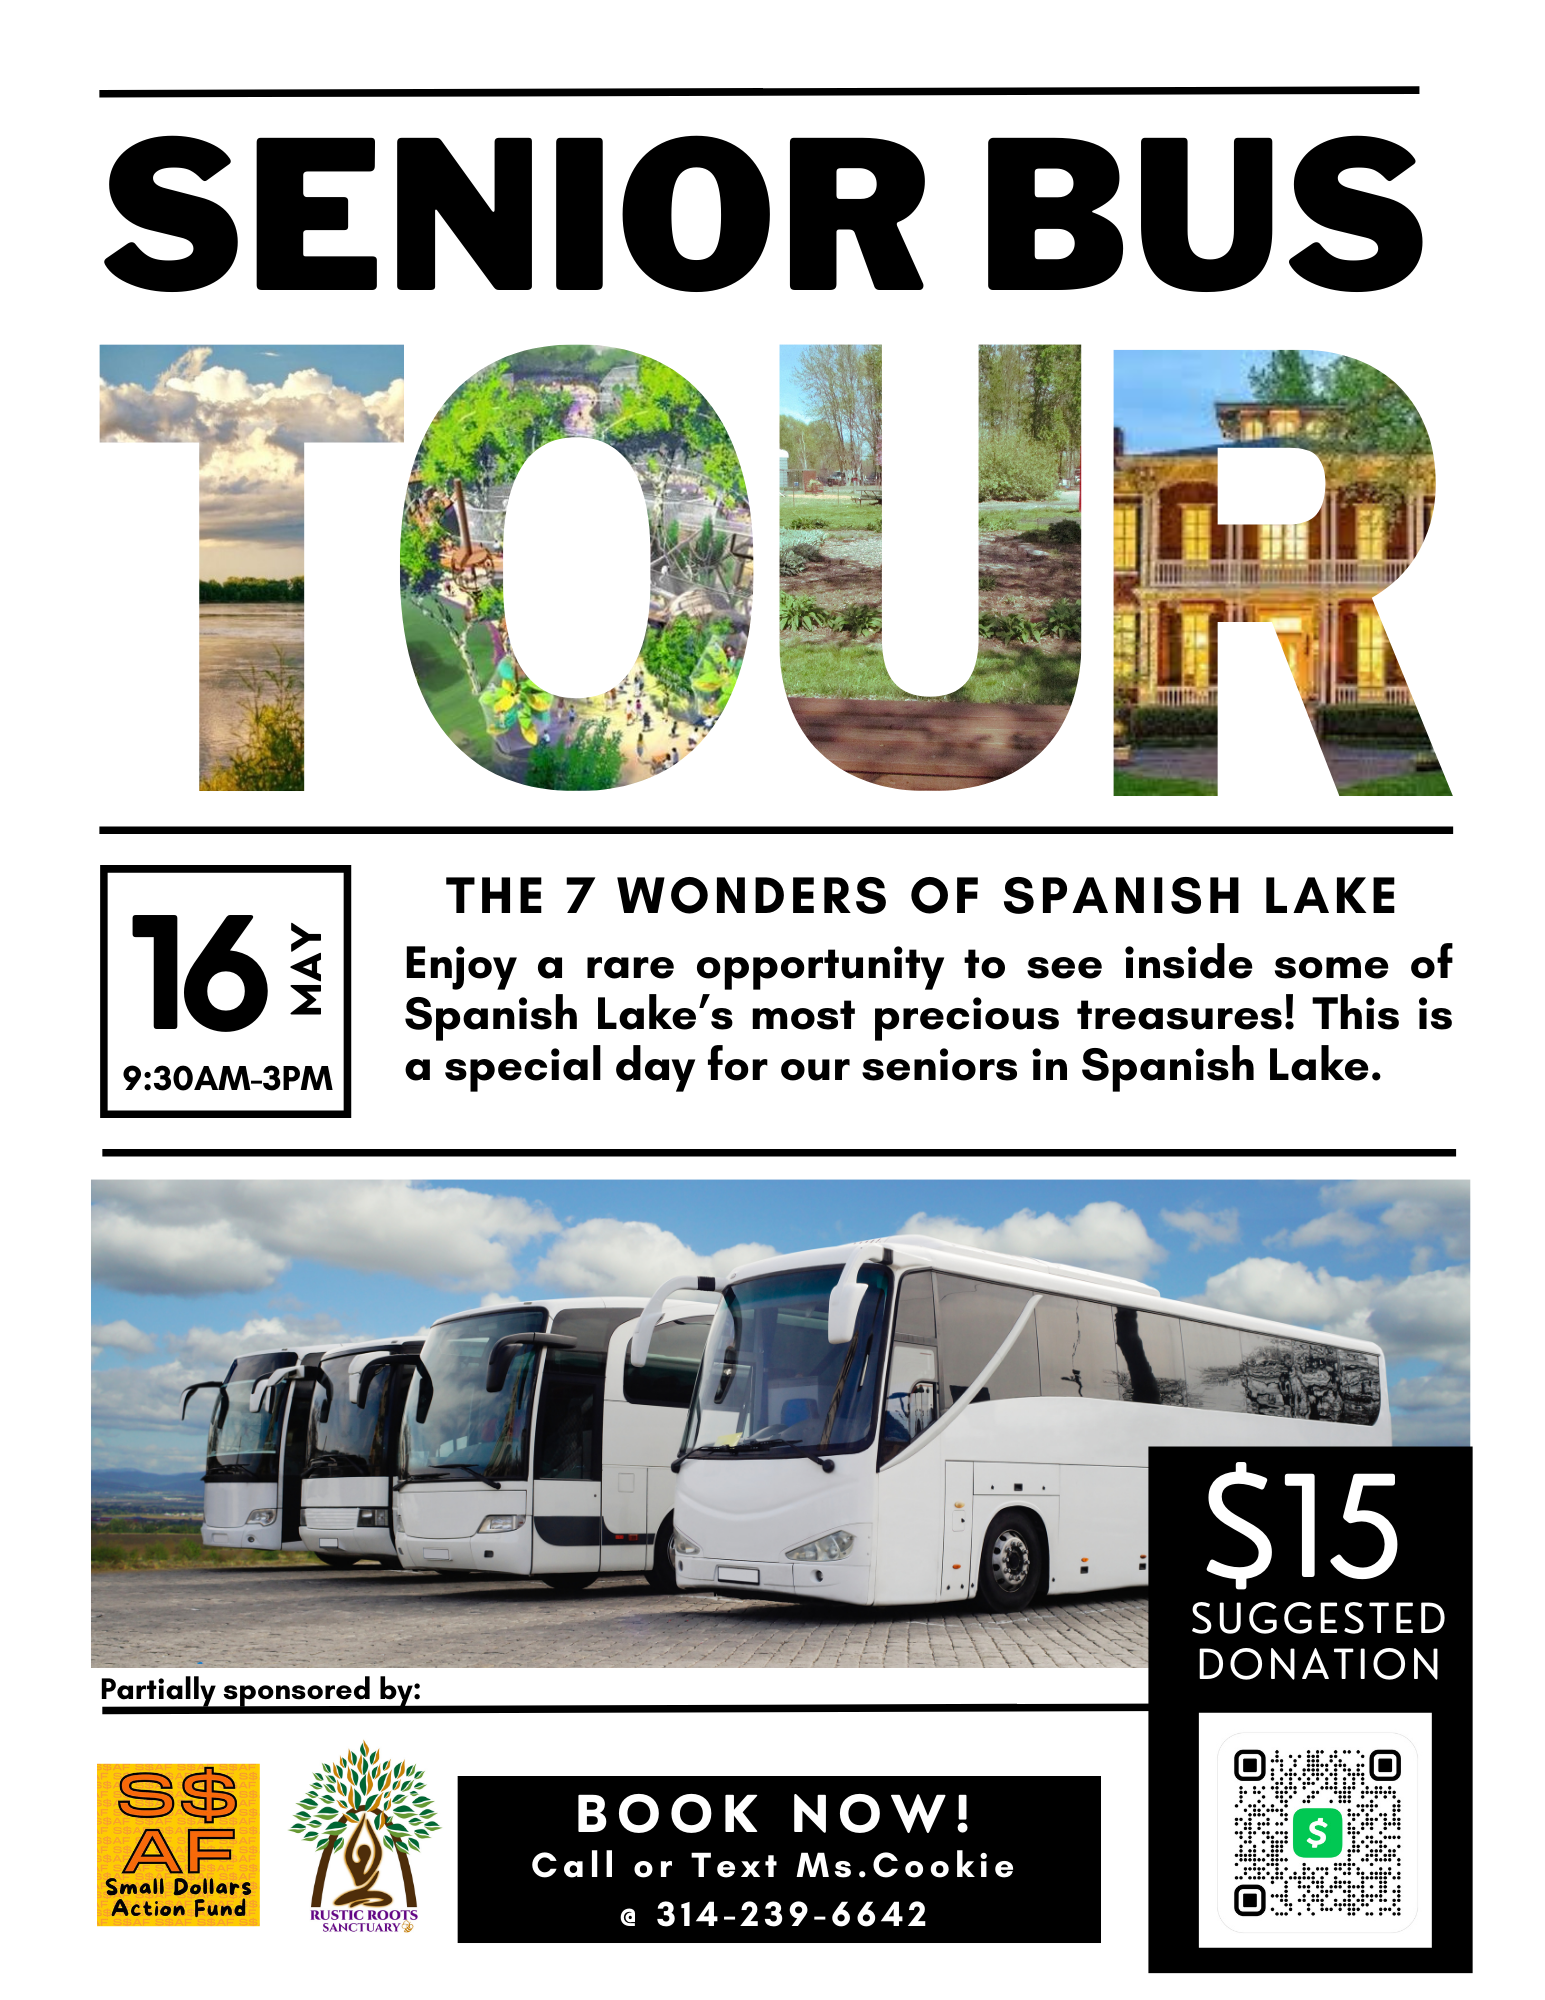 Senior Bus Tour Flyer